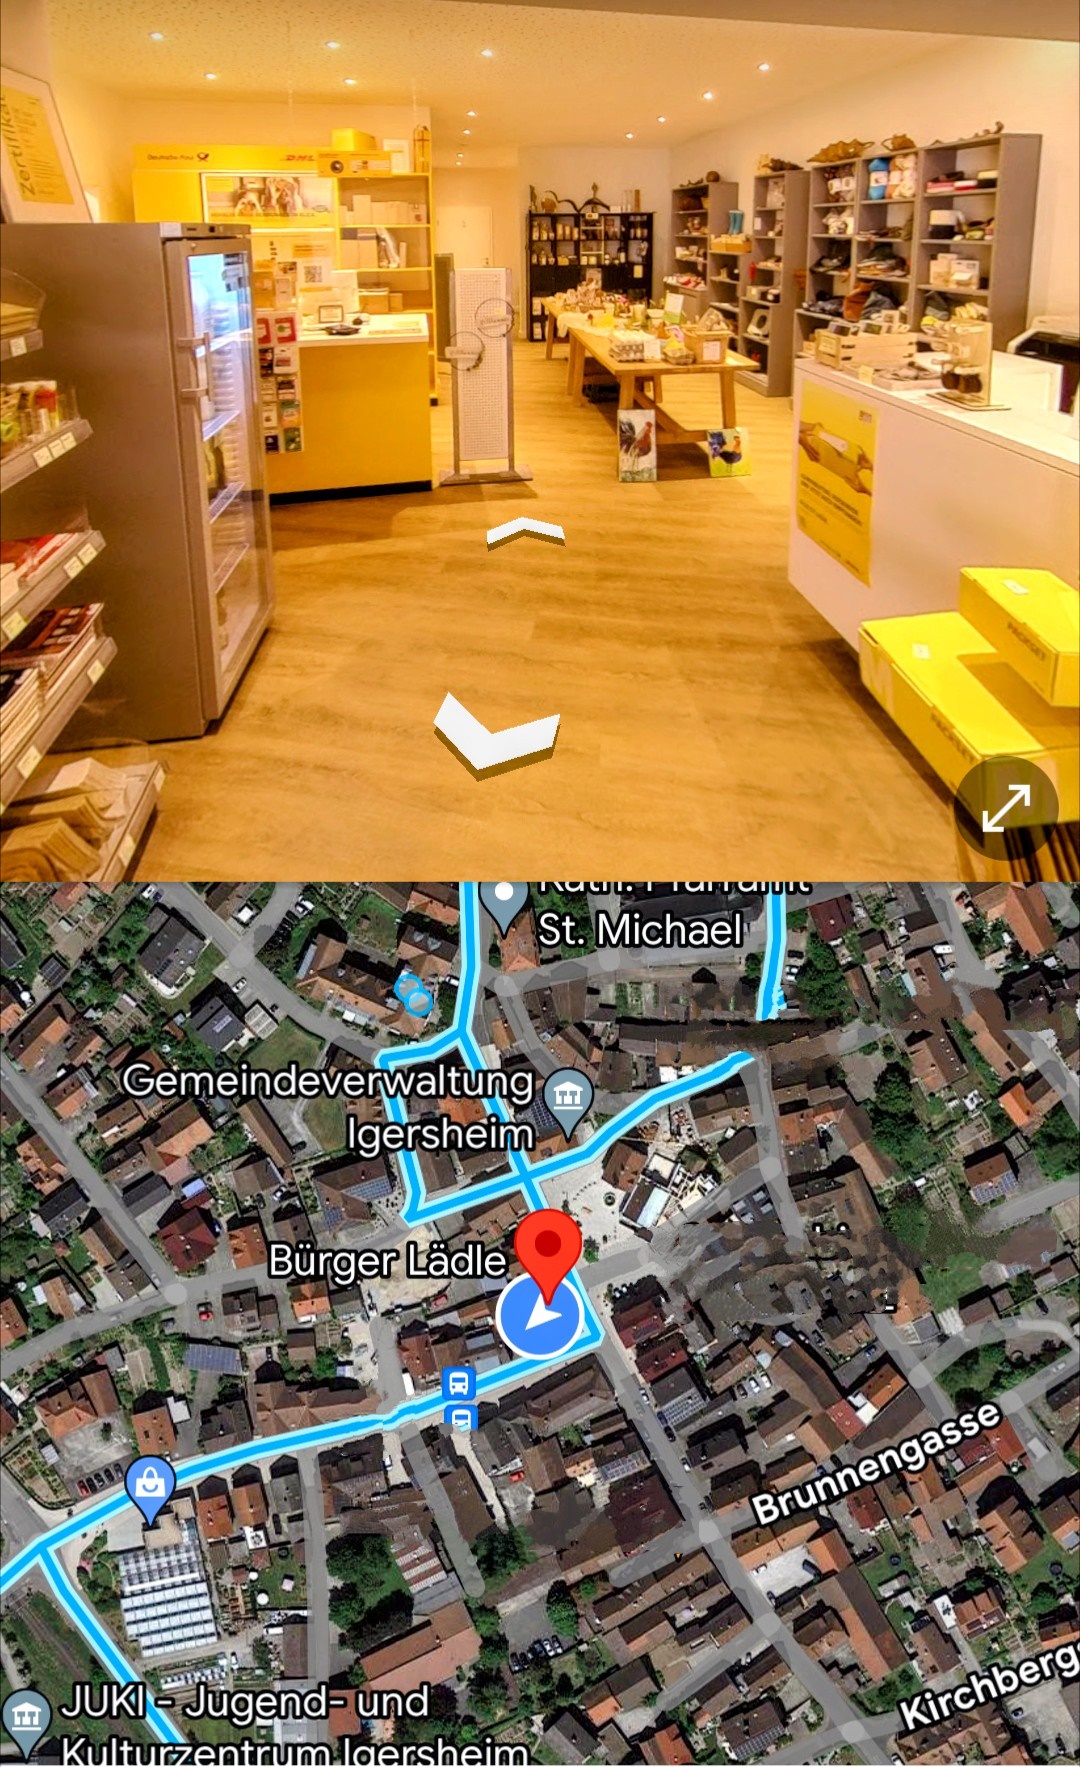 Obere Bildhälfte: Innenansicht BürgerLädle - Untere Bildhälfte: Straßenansicht aus Google Maps